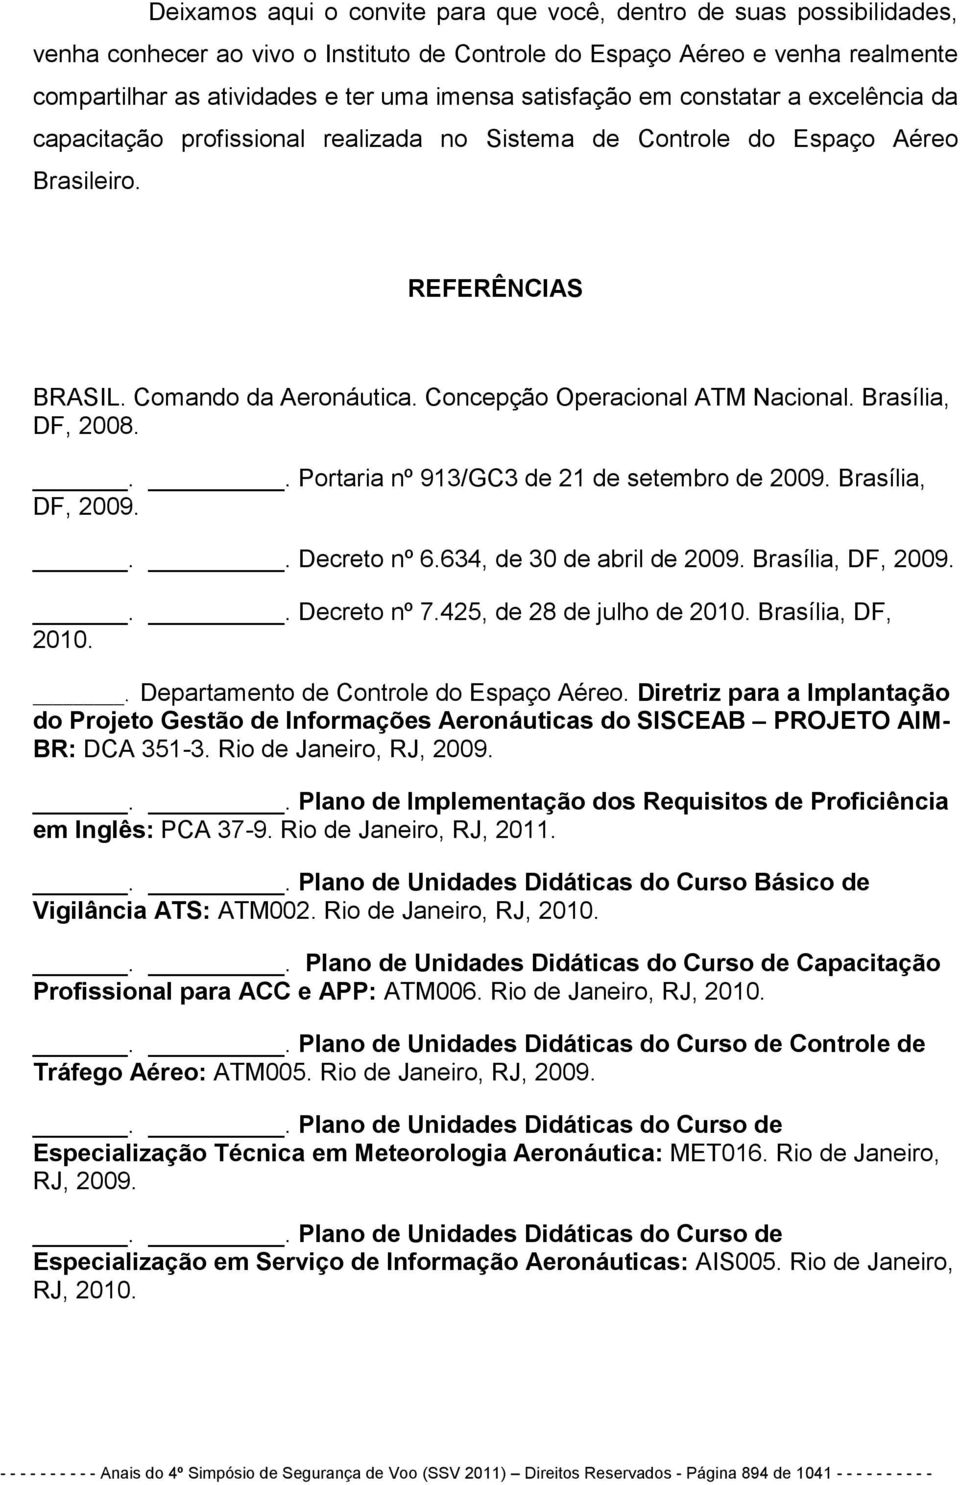 Concepção Operacional ATM Nacional. Brasília, DF, 2008... Portaria nº 913/GC3 de 21 de setembro de 2009. Brasília, DF, 2009... Decreto nº 6.634, de 30 de abril de 2009. Brasília, DF, 2009... Decreto nº 7.